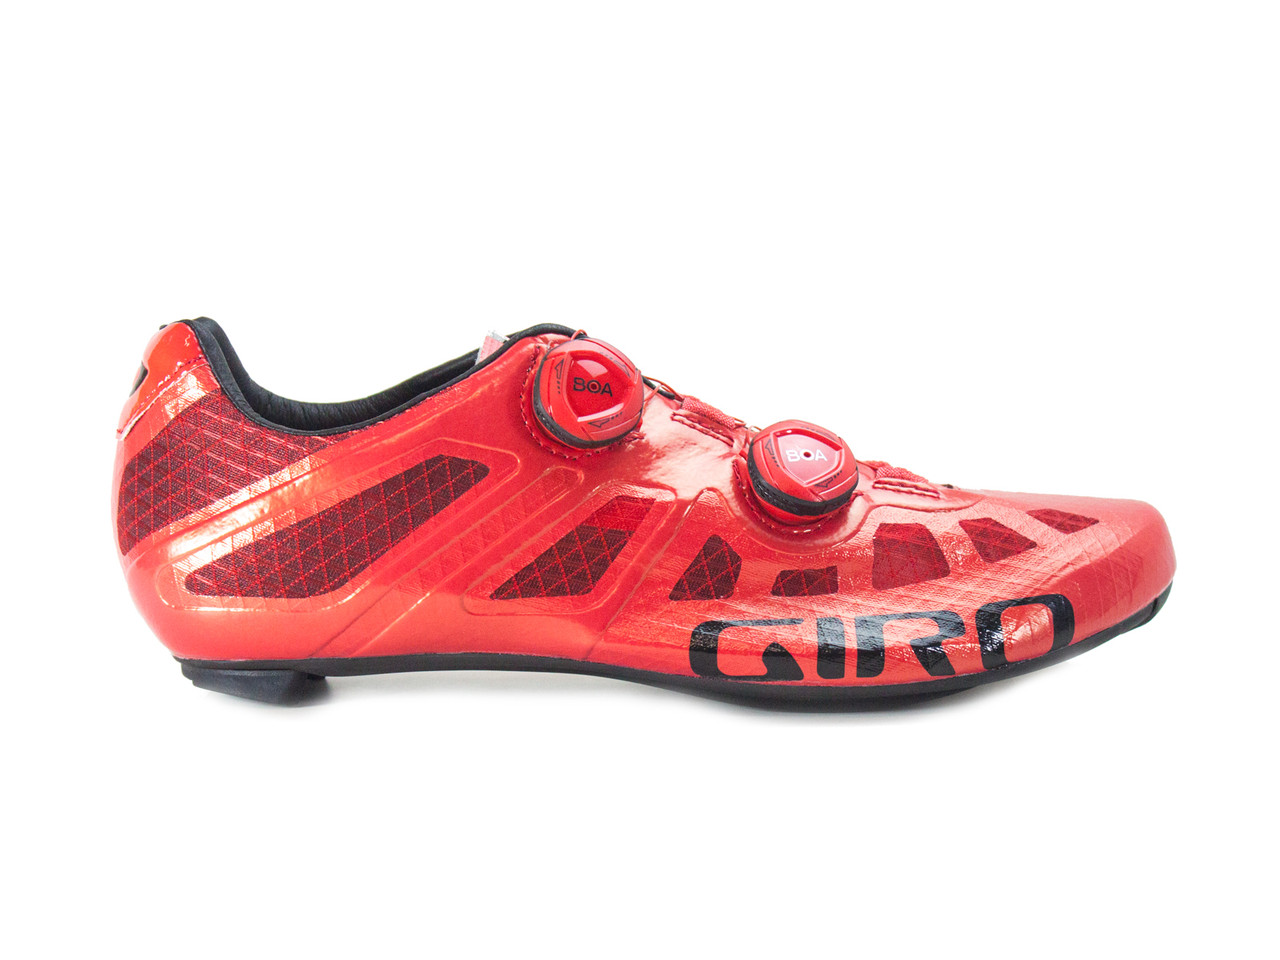 Giro Imperial Road Bike Shoes